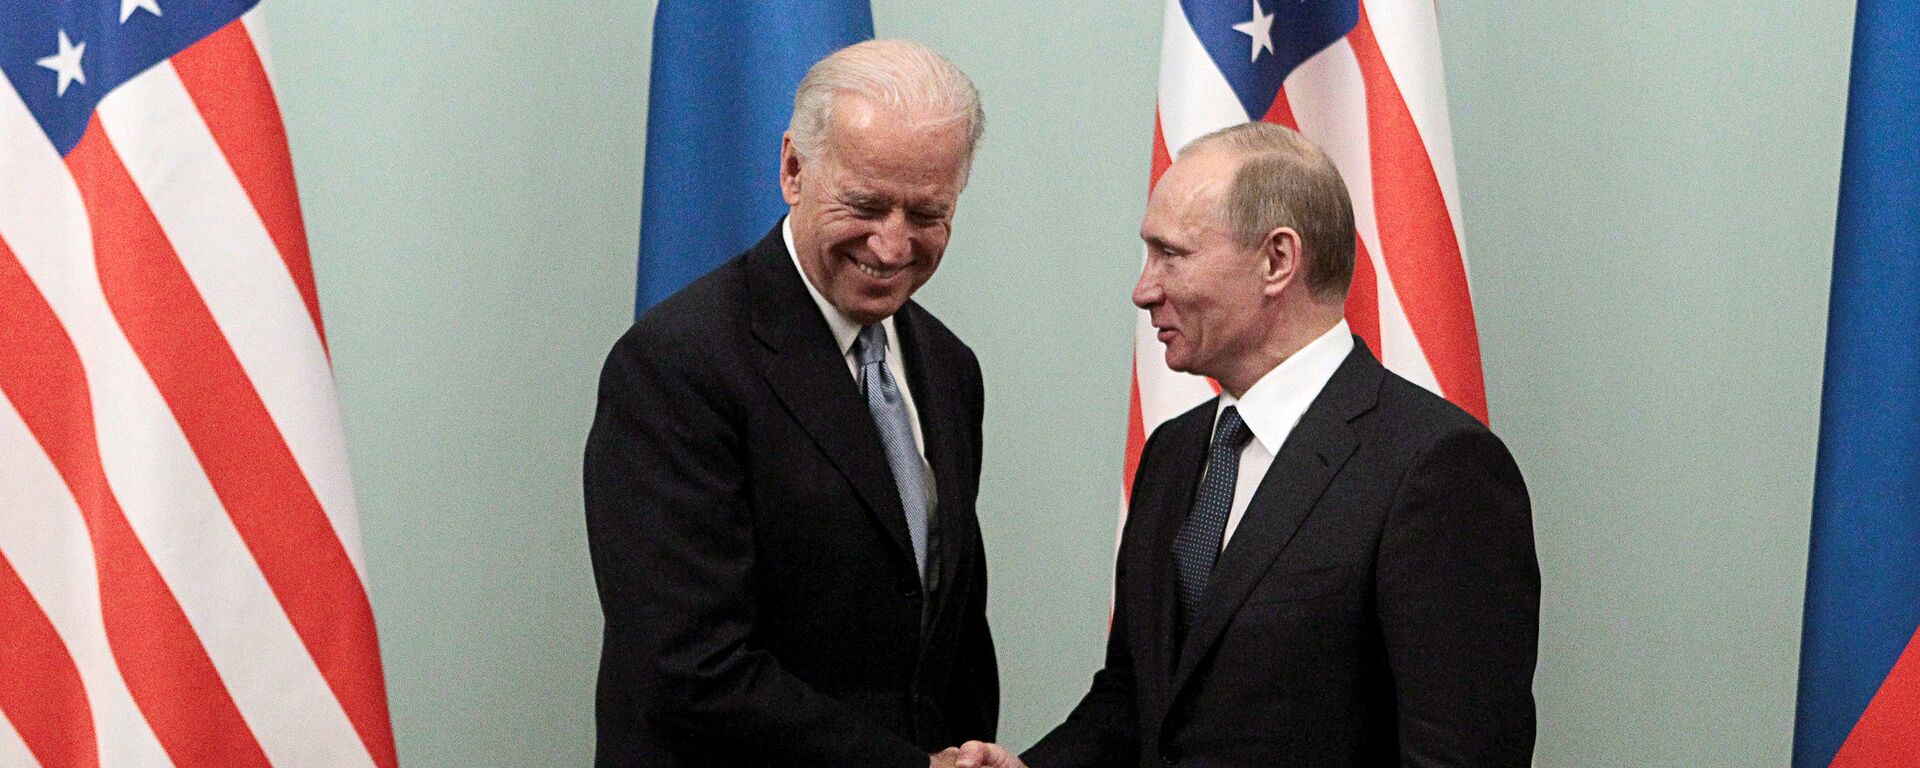 Rusya Devlet Başkanı Vladimir Putin ve ABD Başkanı Joe Biden - Sputnik Türkiye, 1920, 26.01.2021